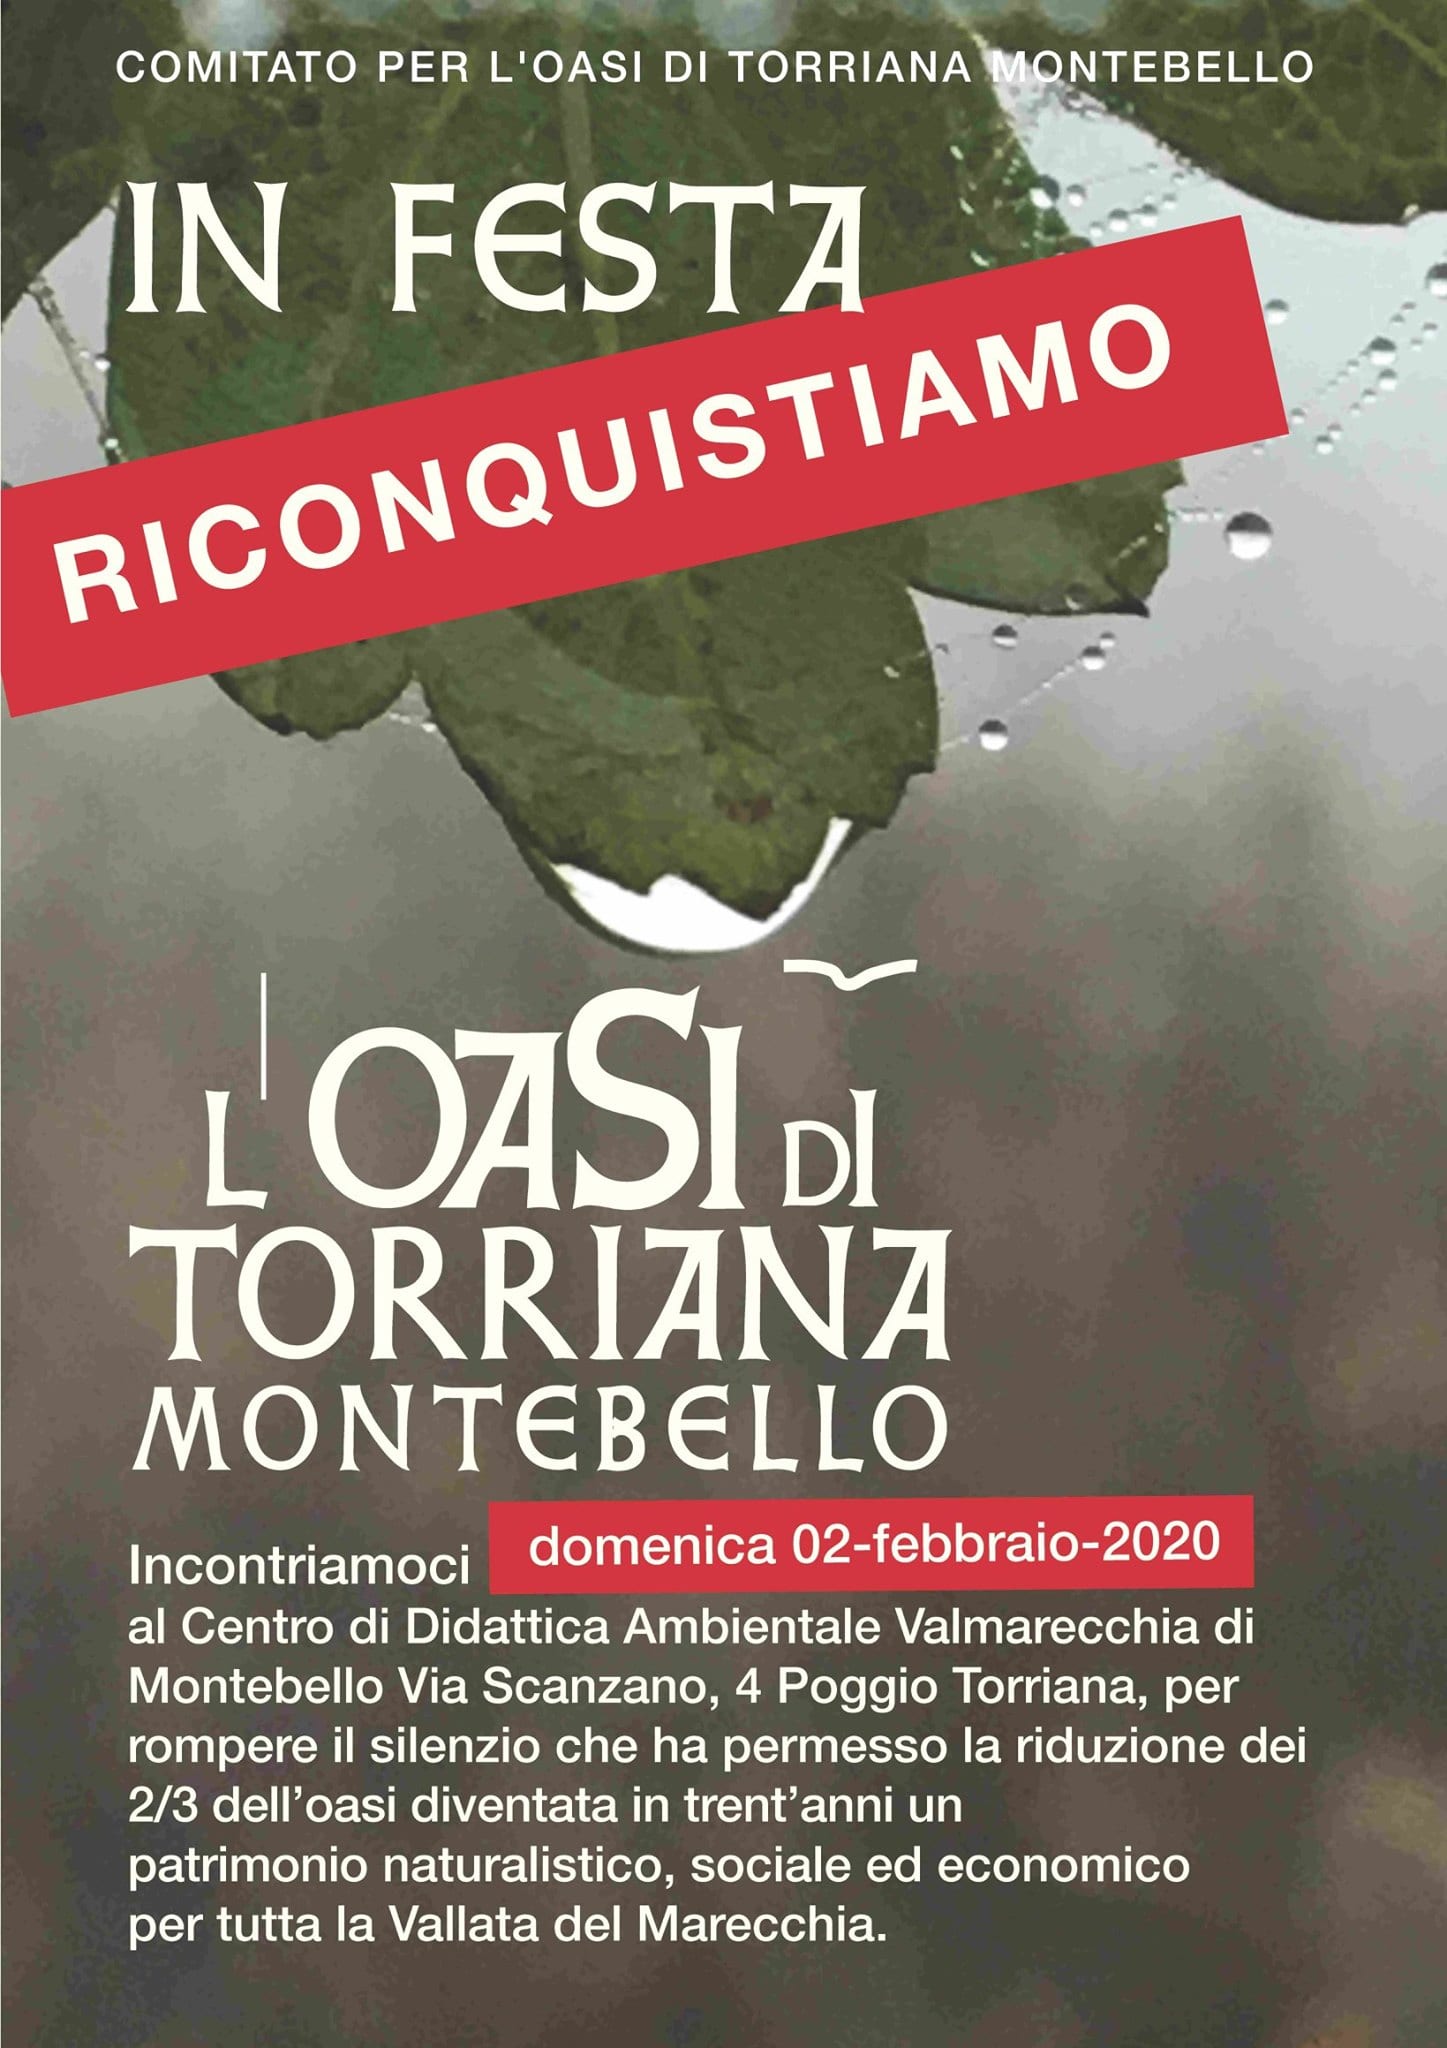 Giornata di iniziative a sostegno dell’Oasi di Torriana e Montebello